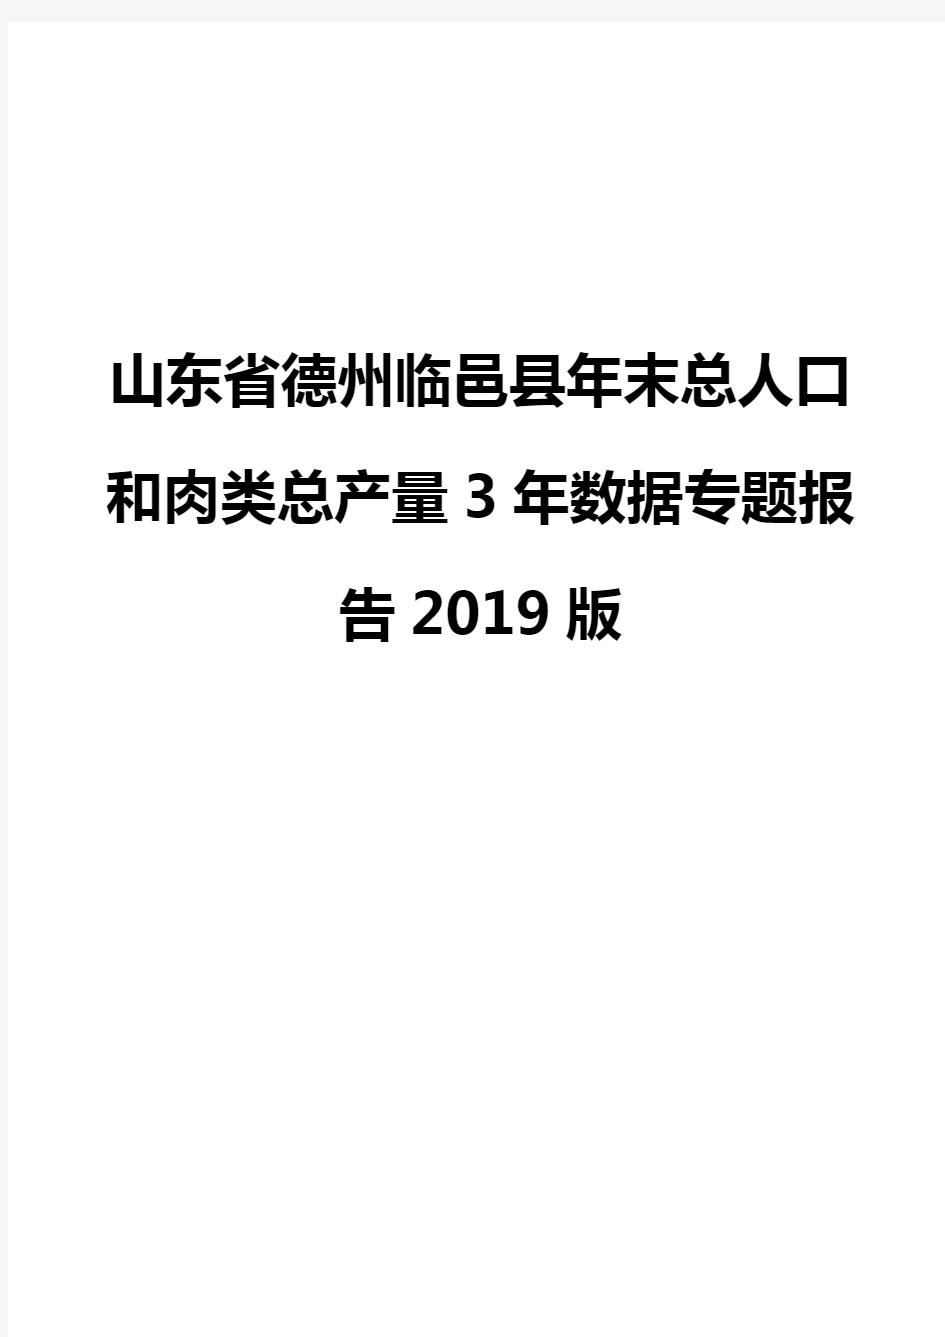 山东省德州临邑县年末总人口和肉类总产量3年数据专题报告2019版